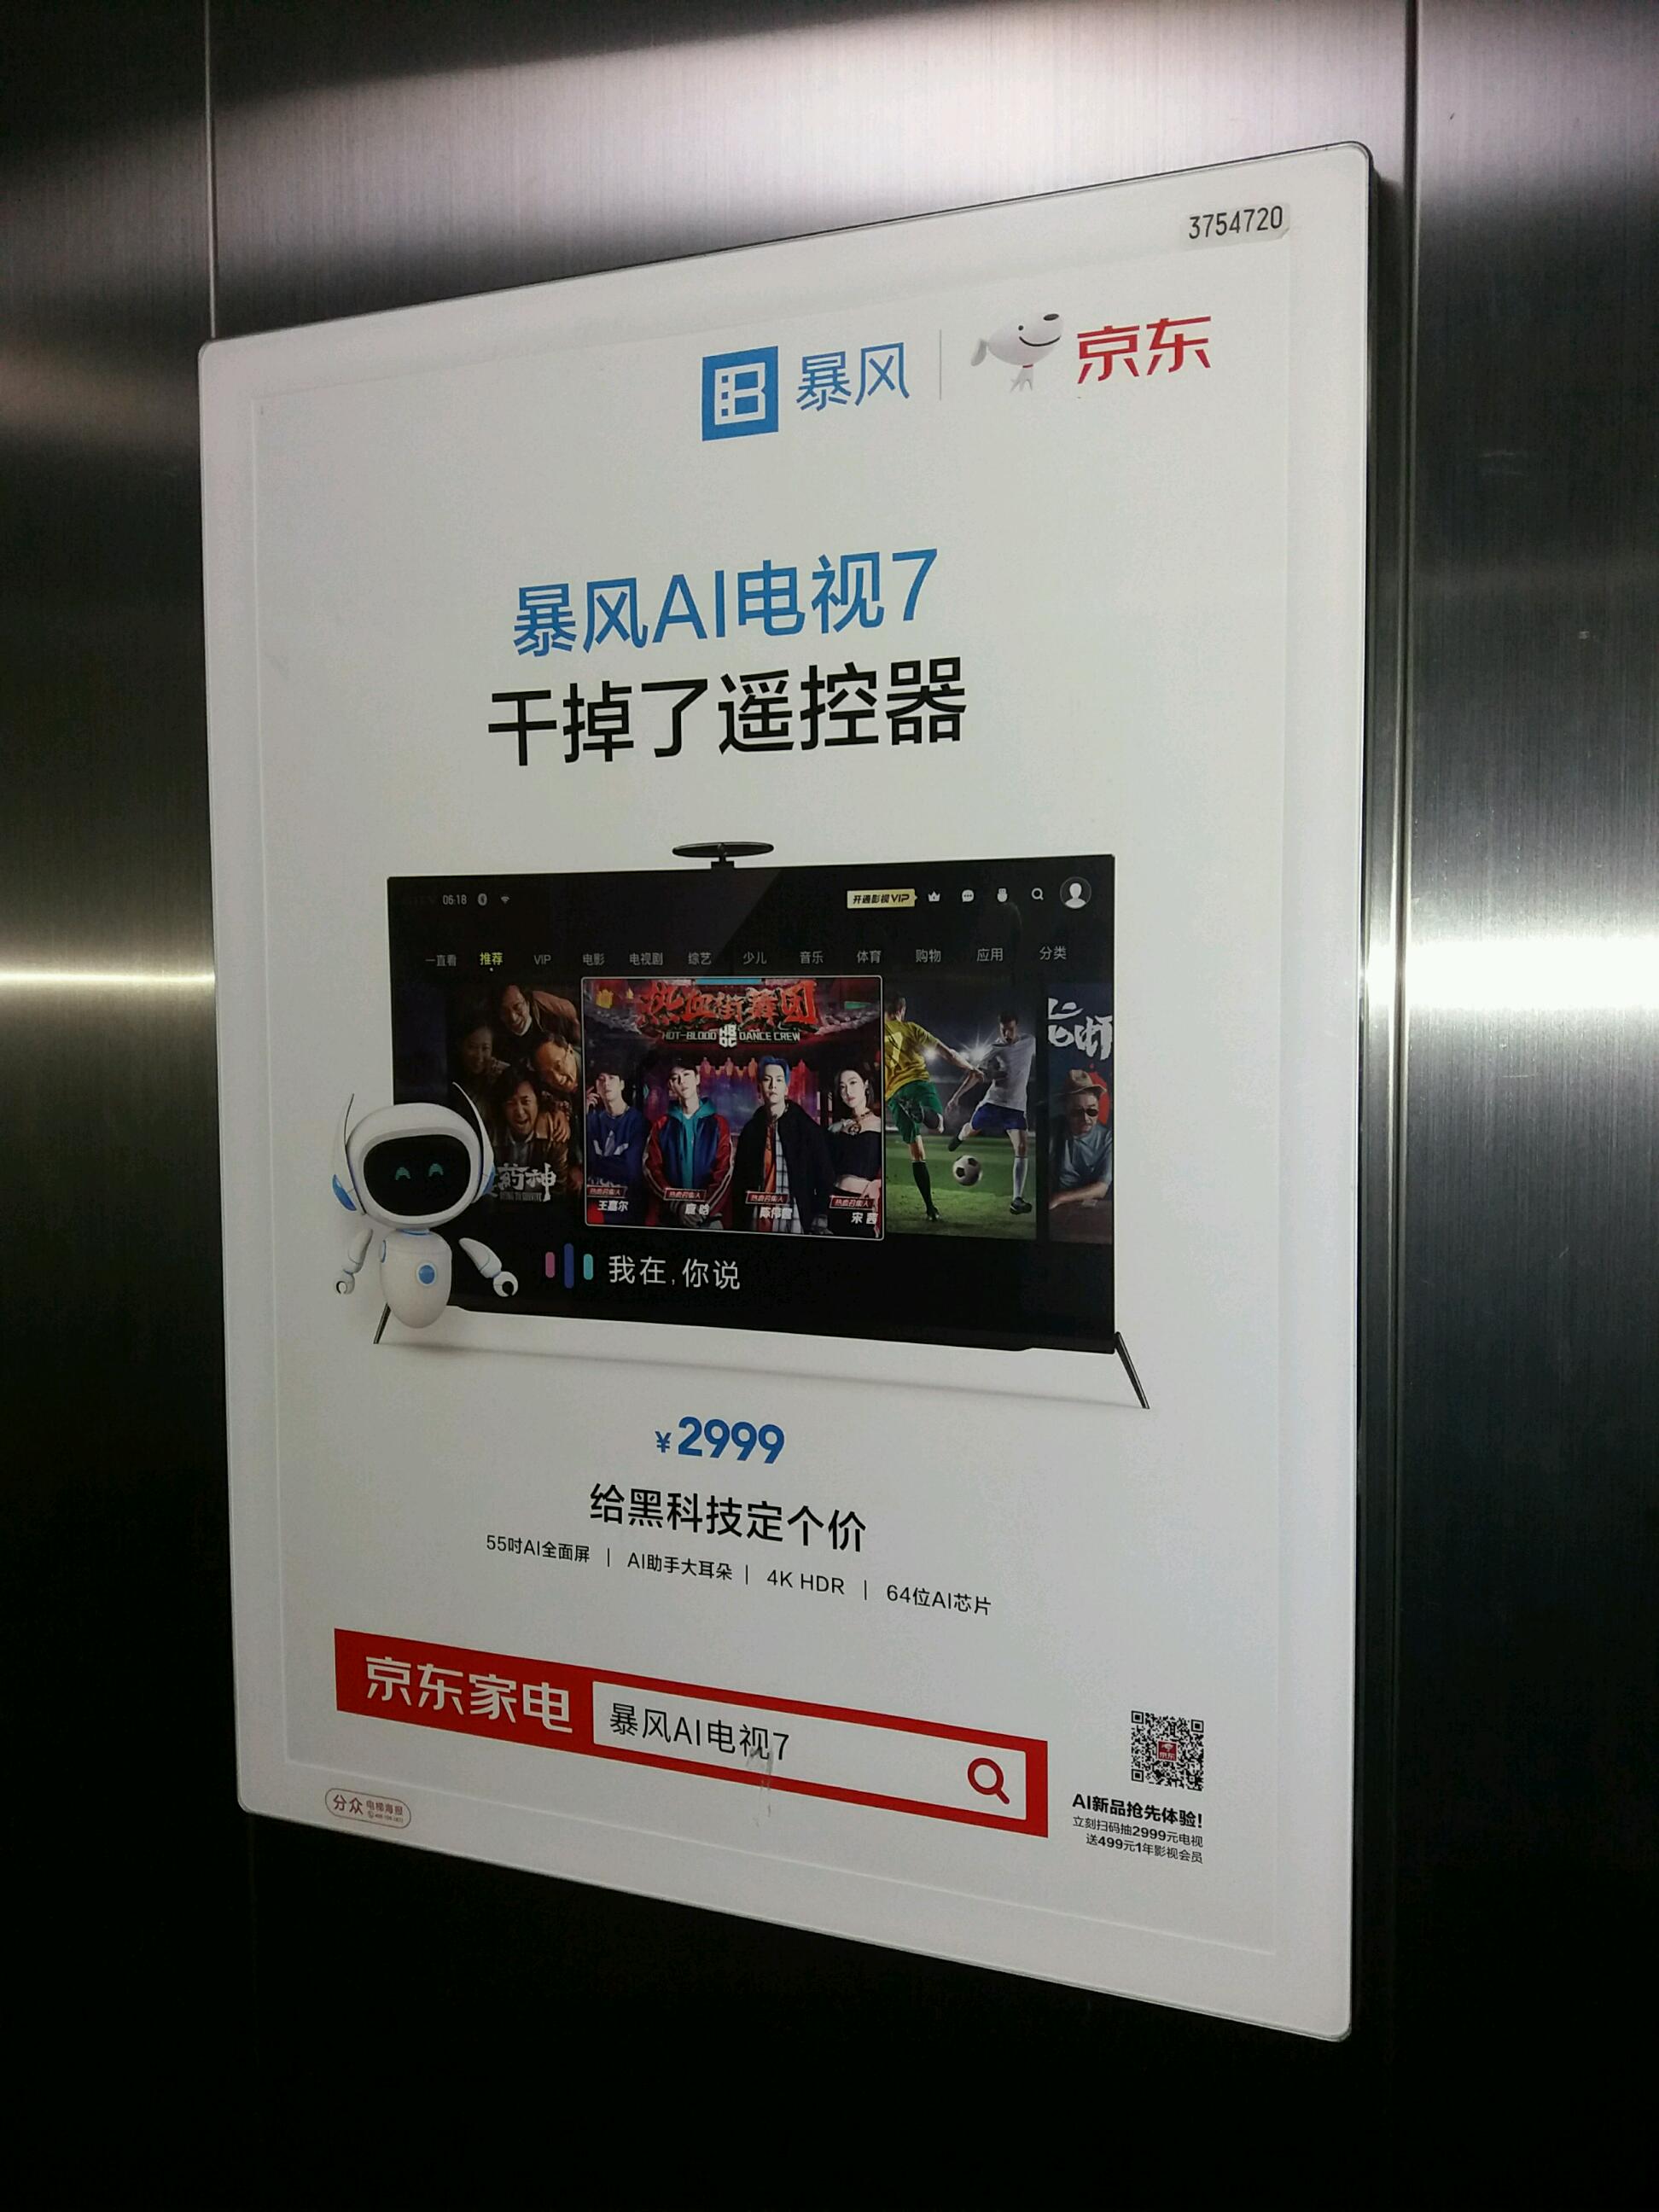 深圳电梯广告 深圳电梯框架广告 深圳电梯海报广告图片